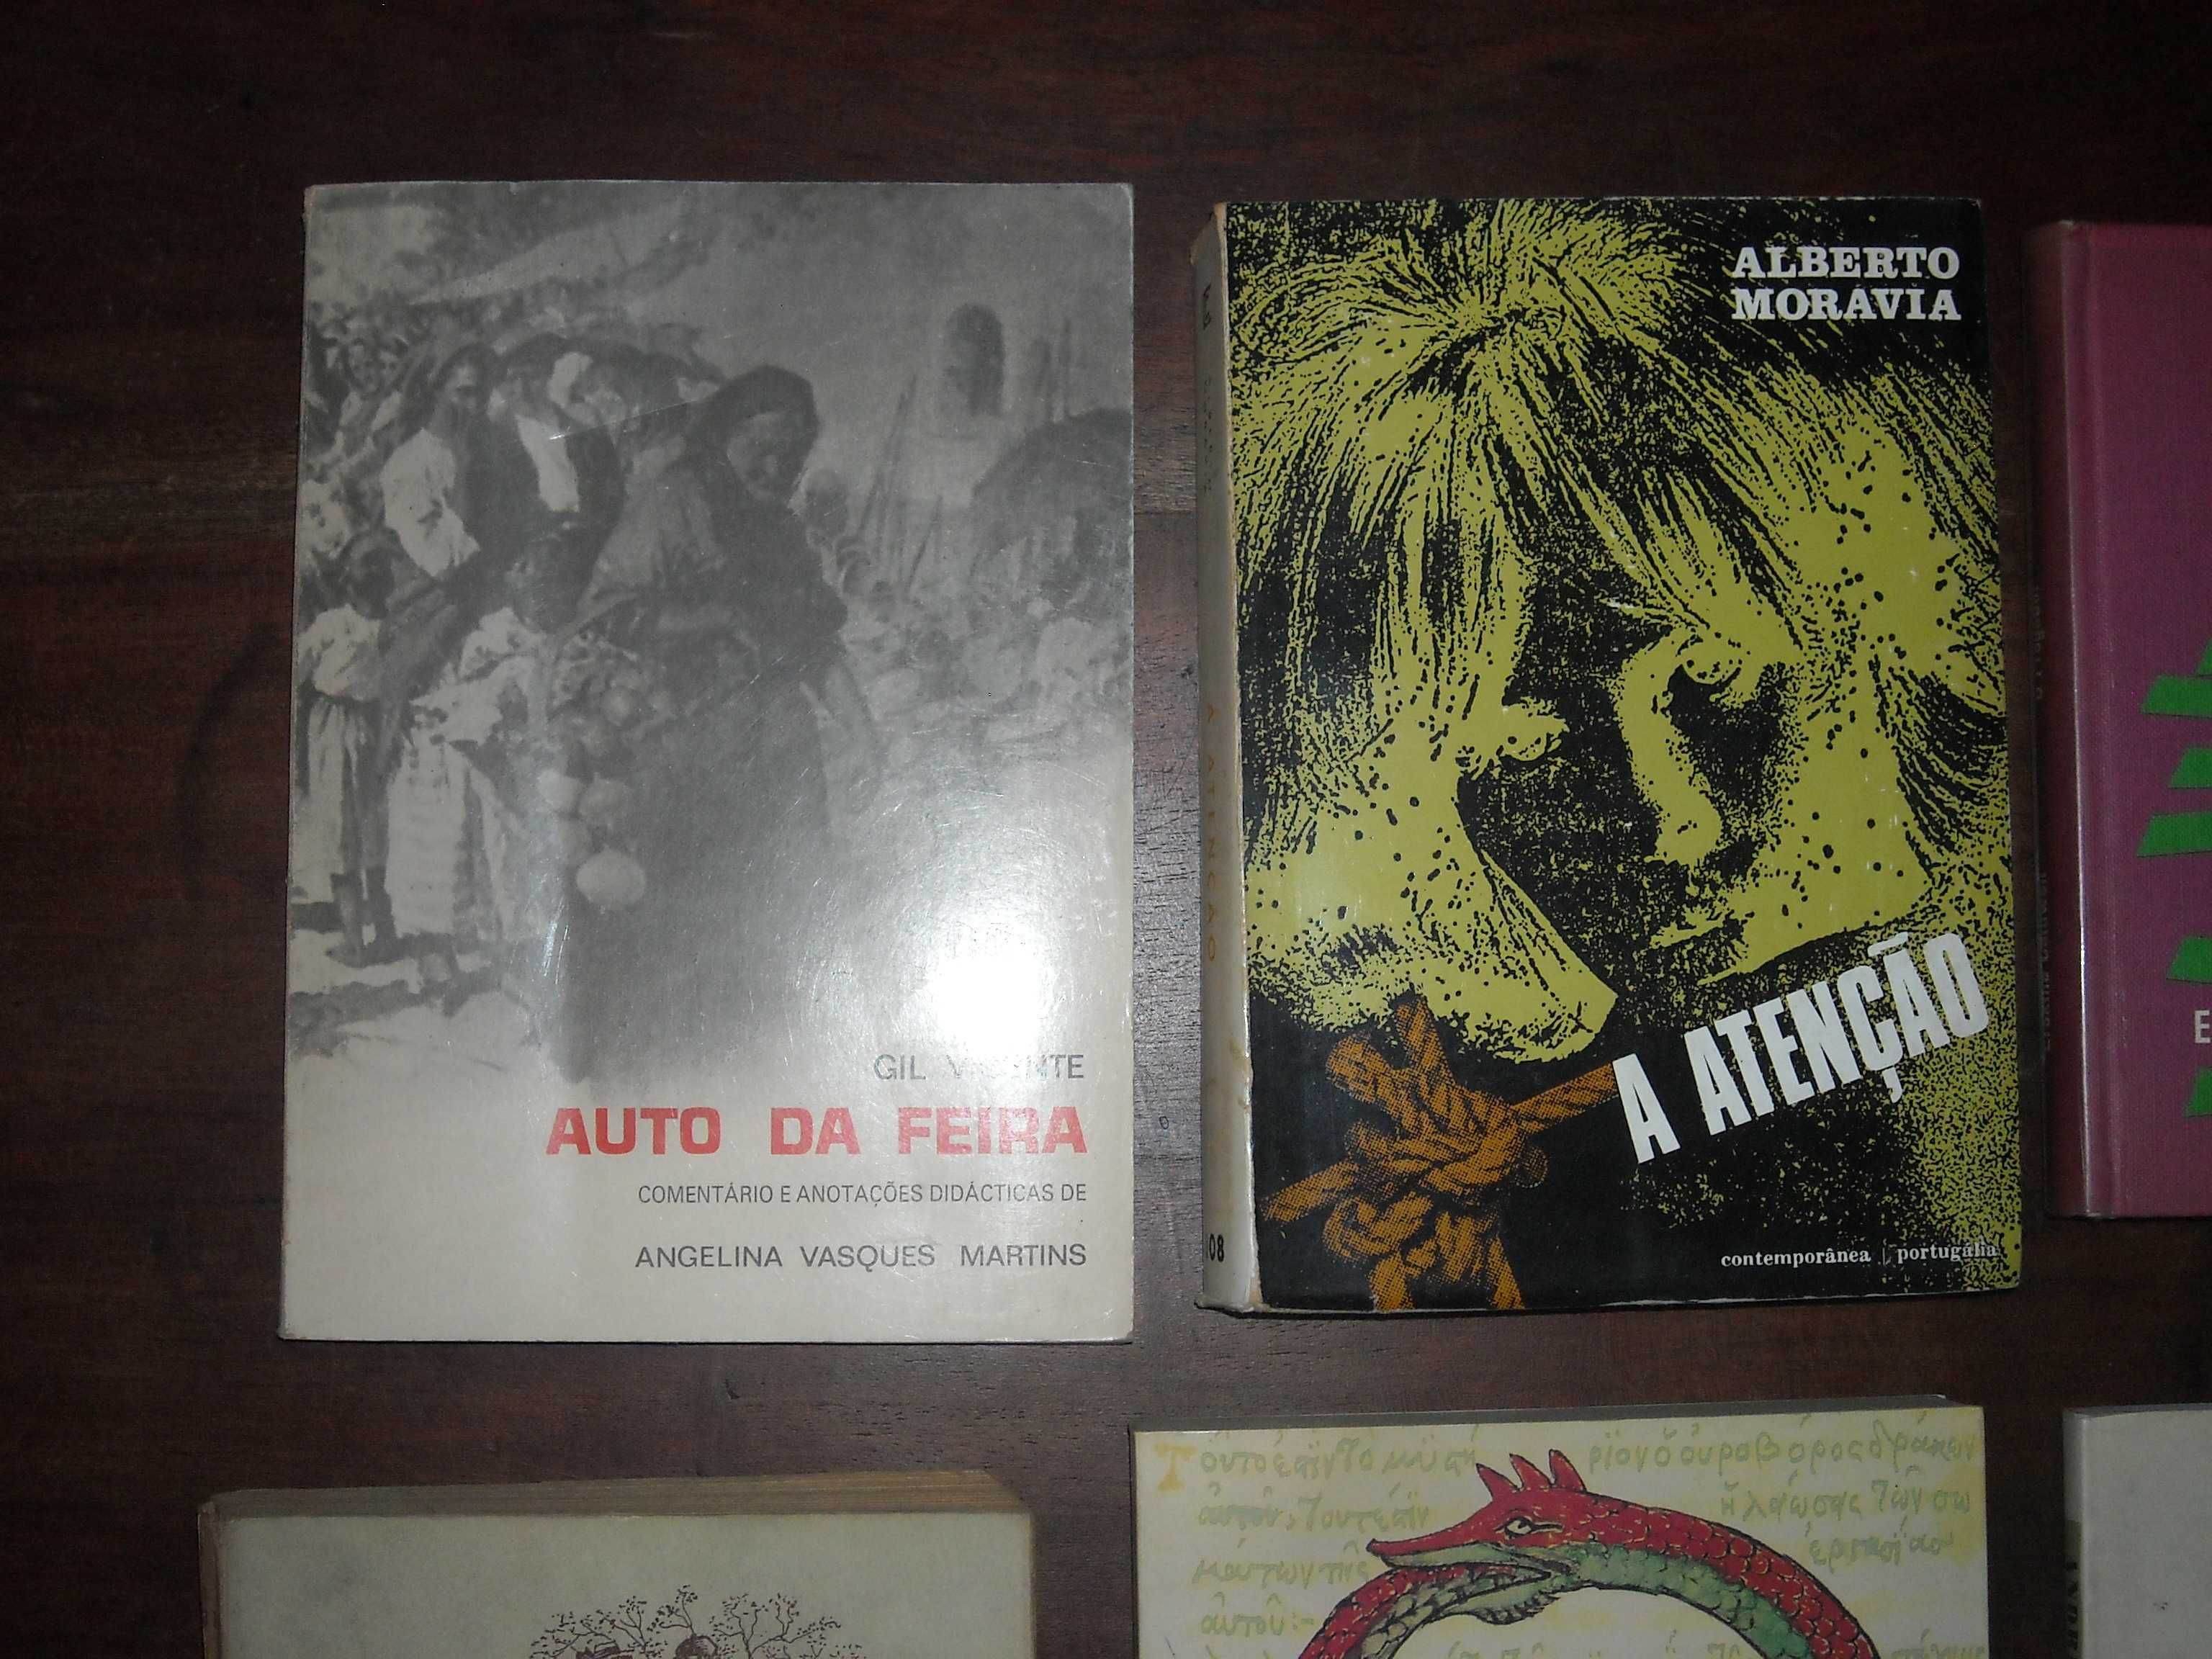 Livros diversos Caldwell, Breton, Gil Vicente, Moravia, Curie, Coelho